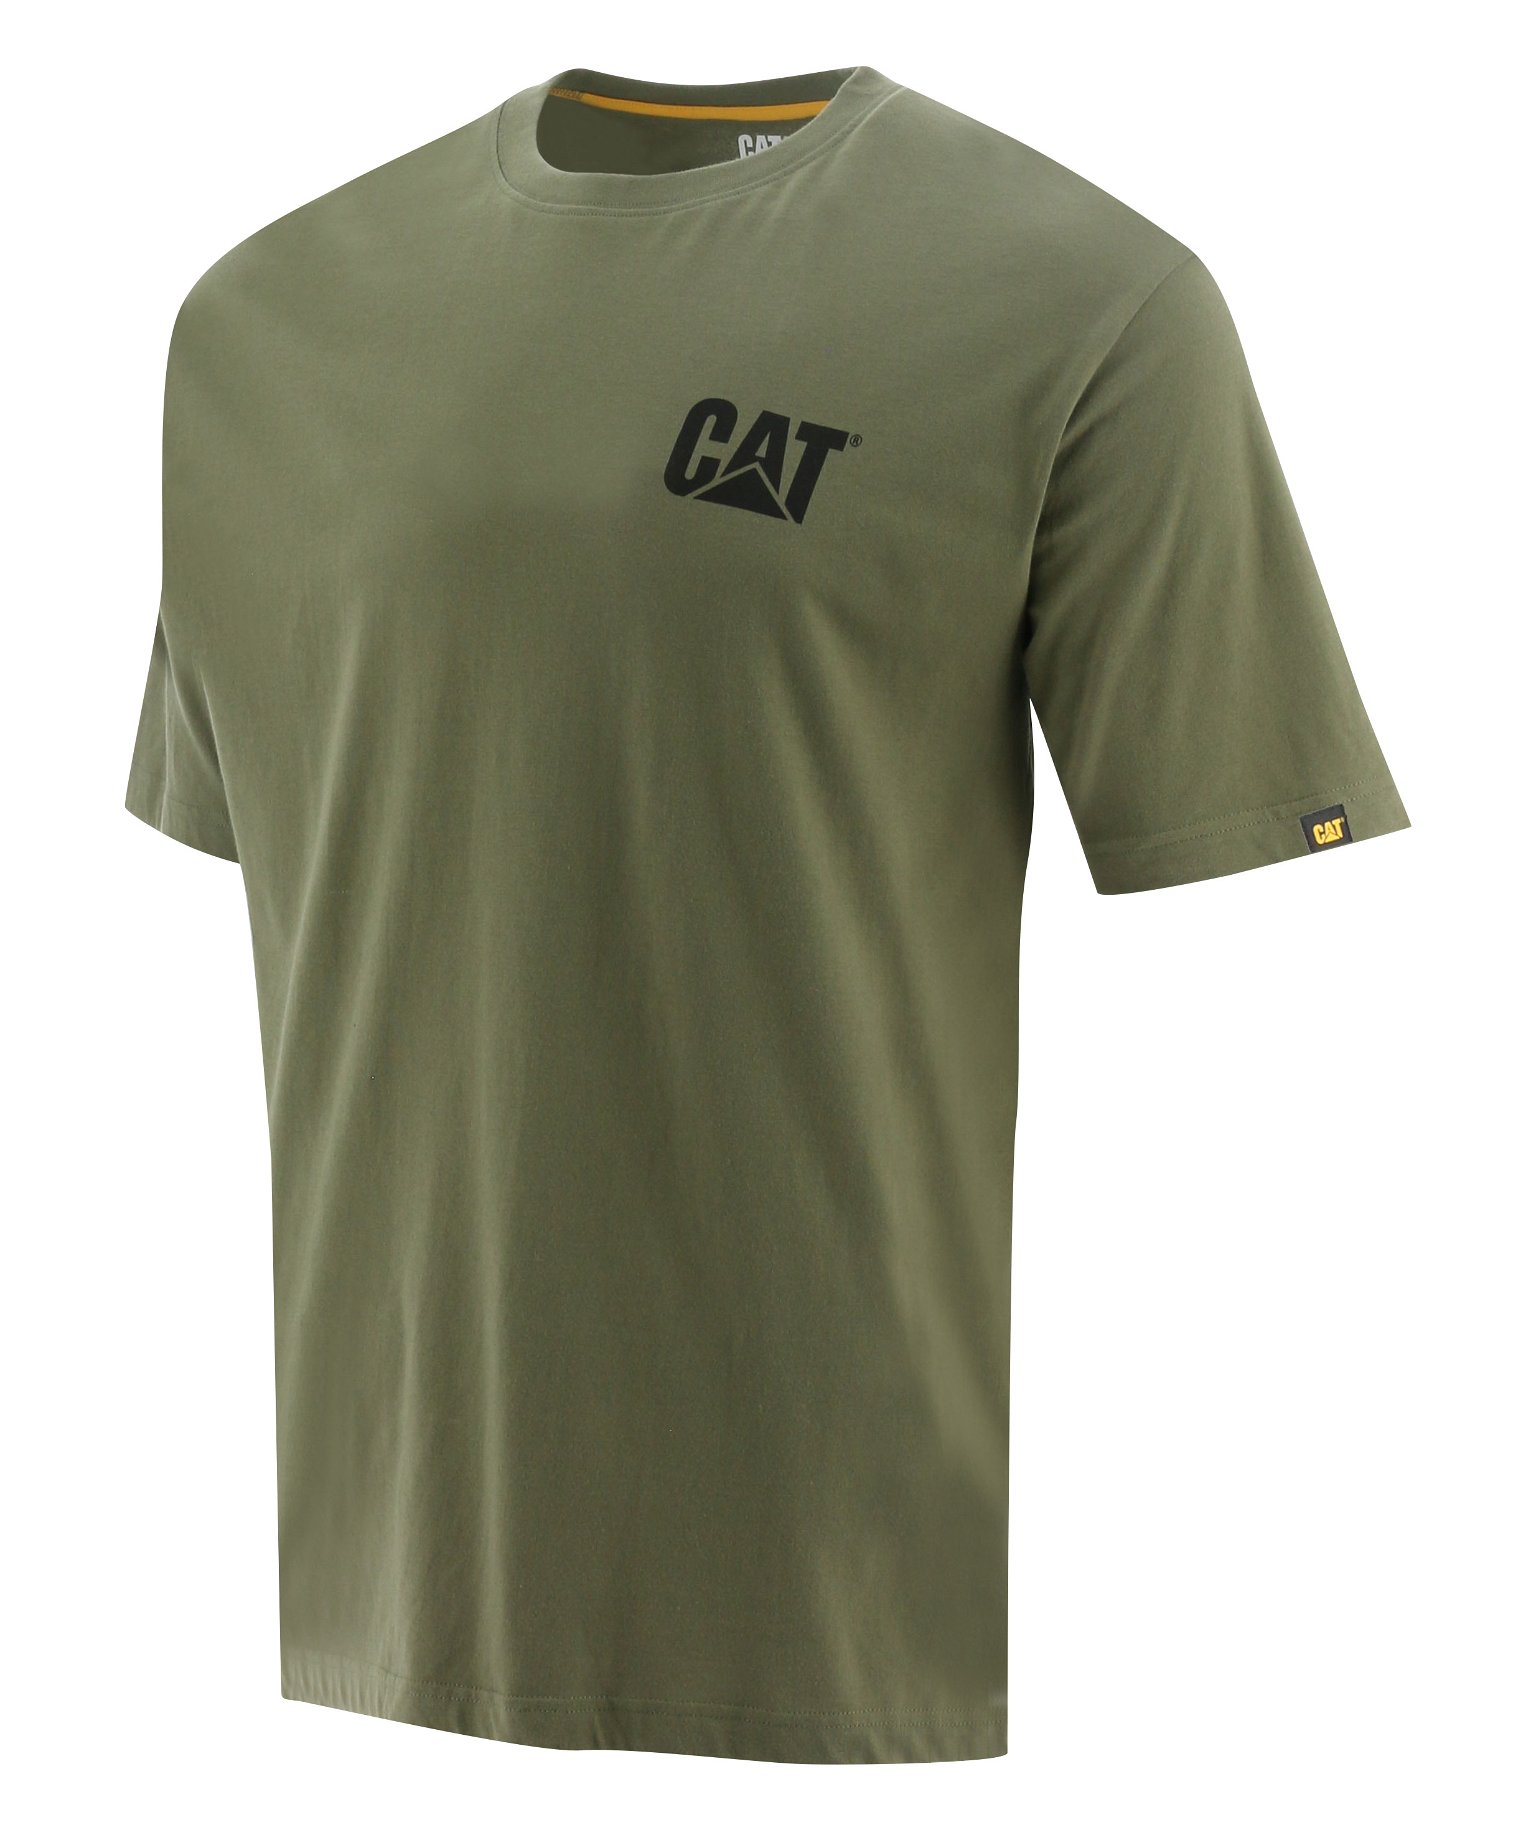 Vyriški marškinėliai trumpomis rankovėmis CAT, chaki spalvos, XL dydis